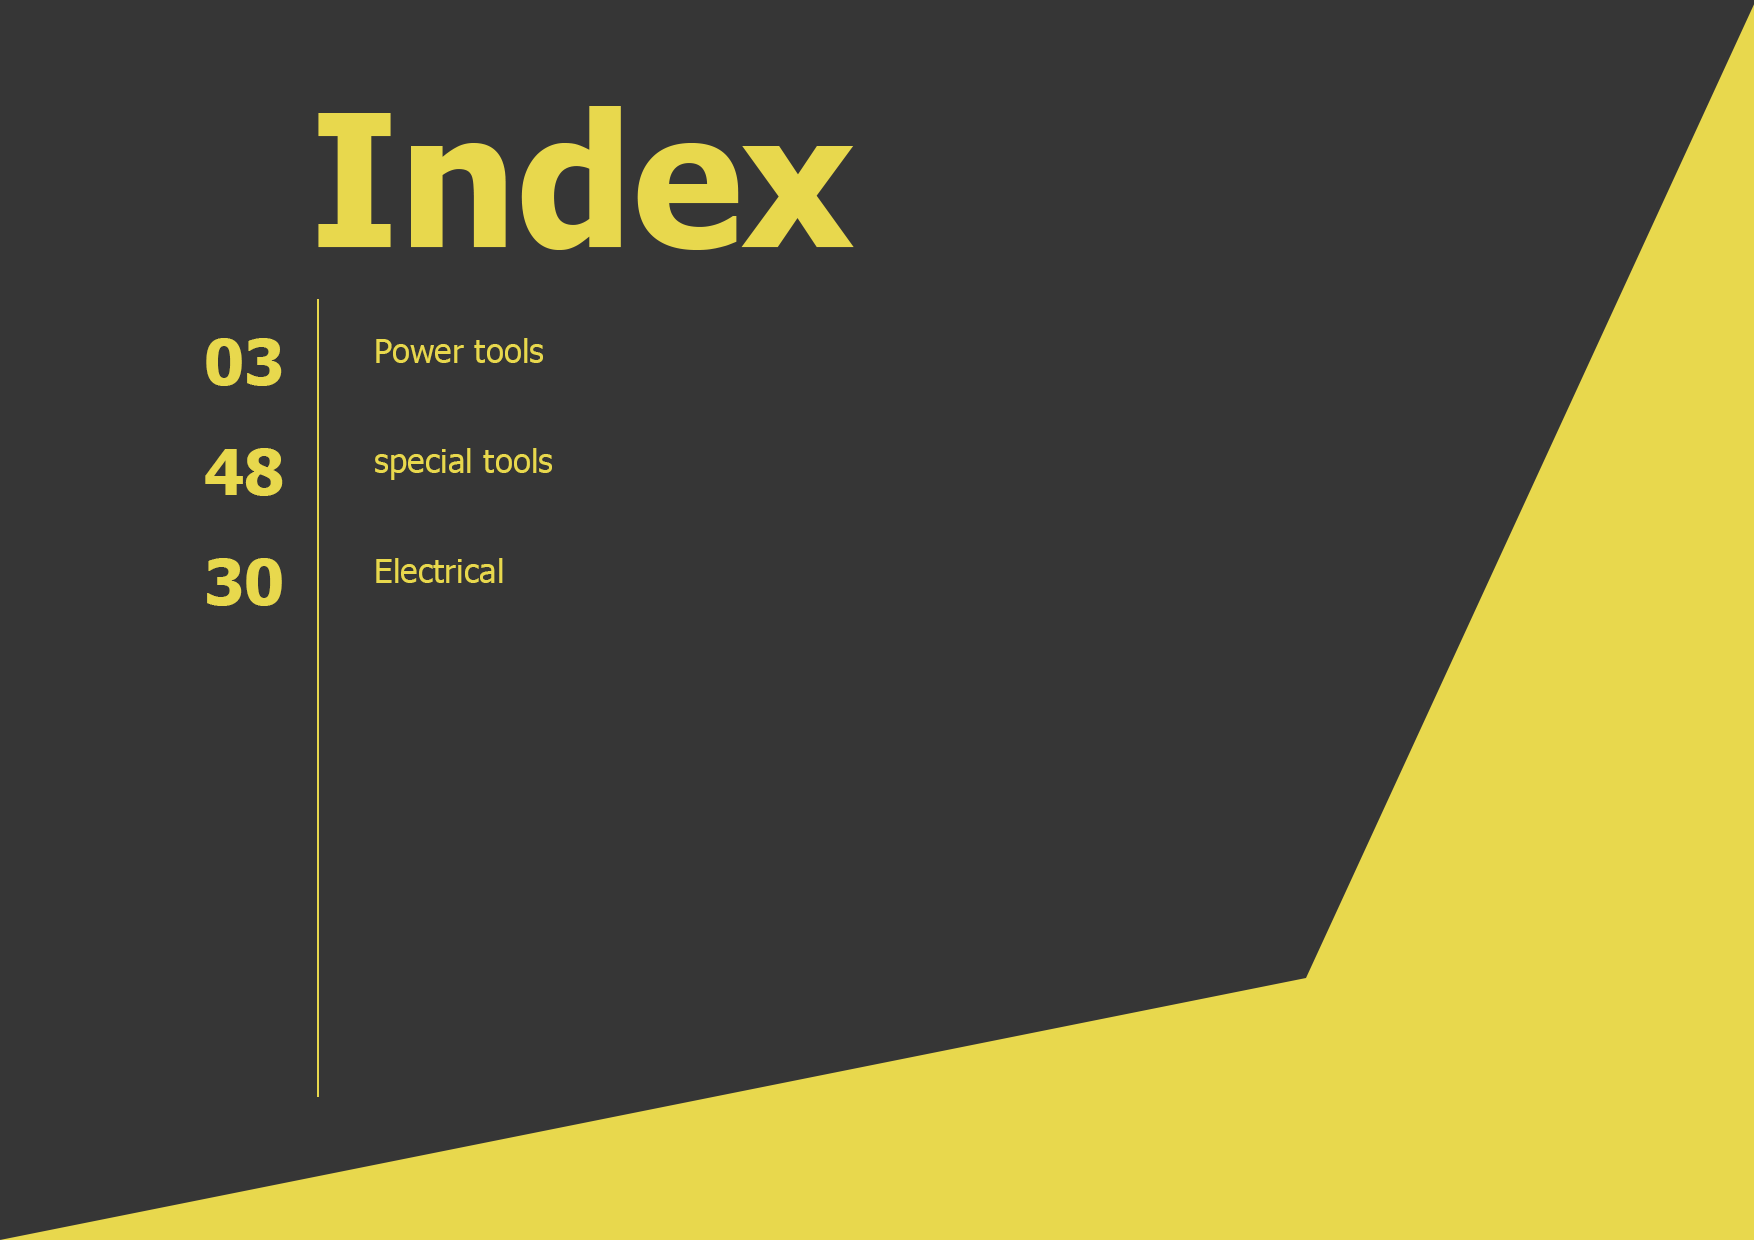 5.3. ToolKit LookBook Free Template - Index